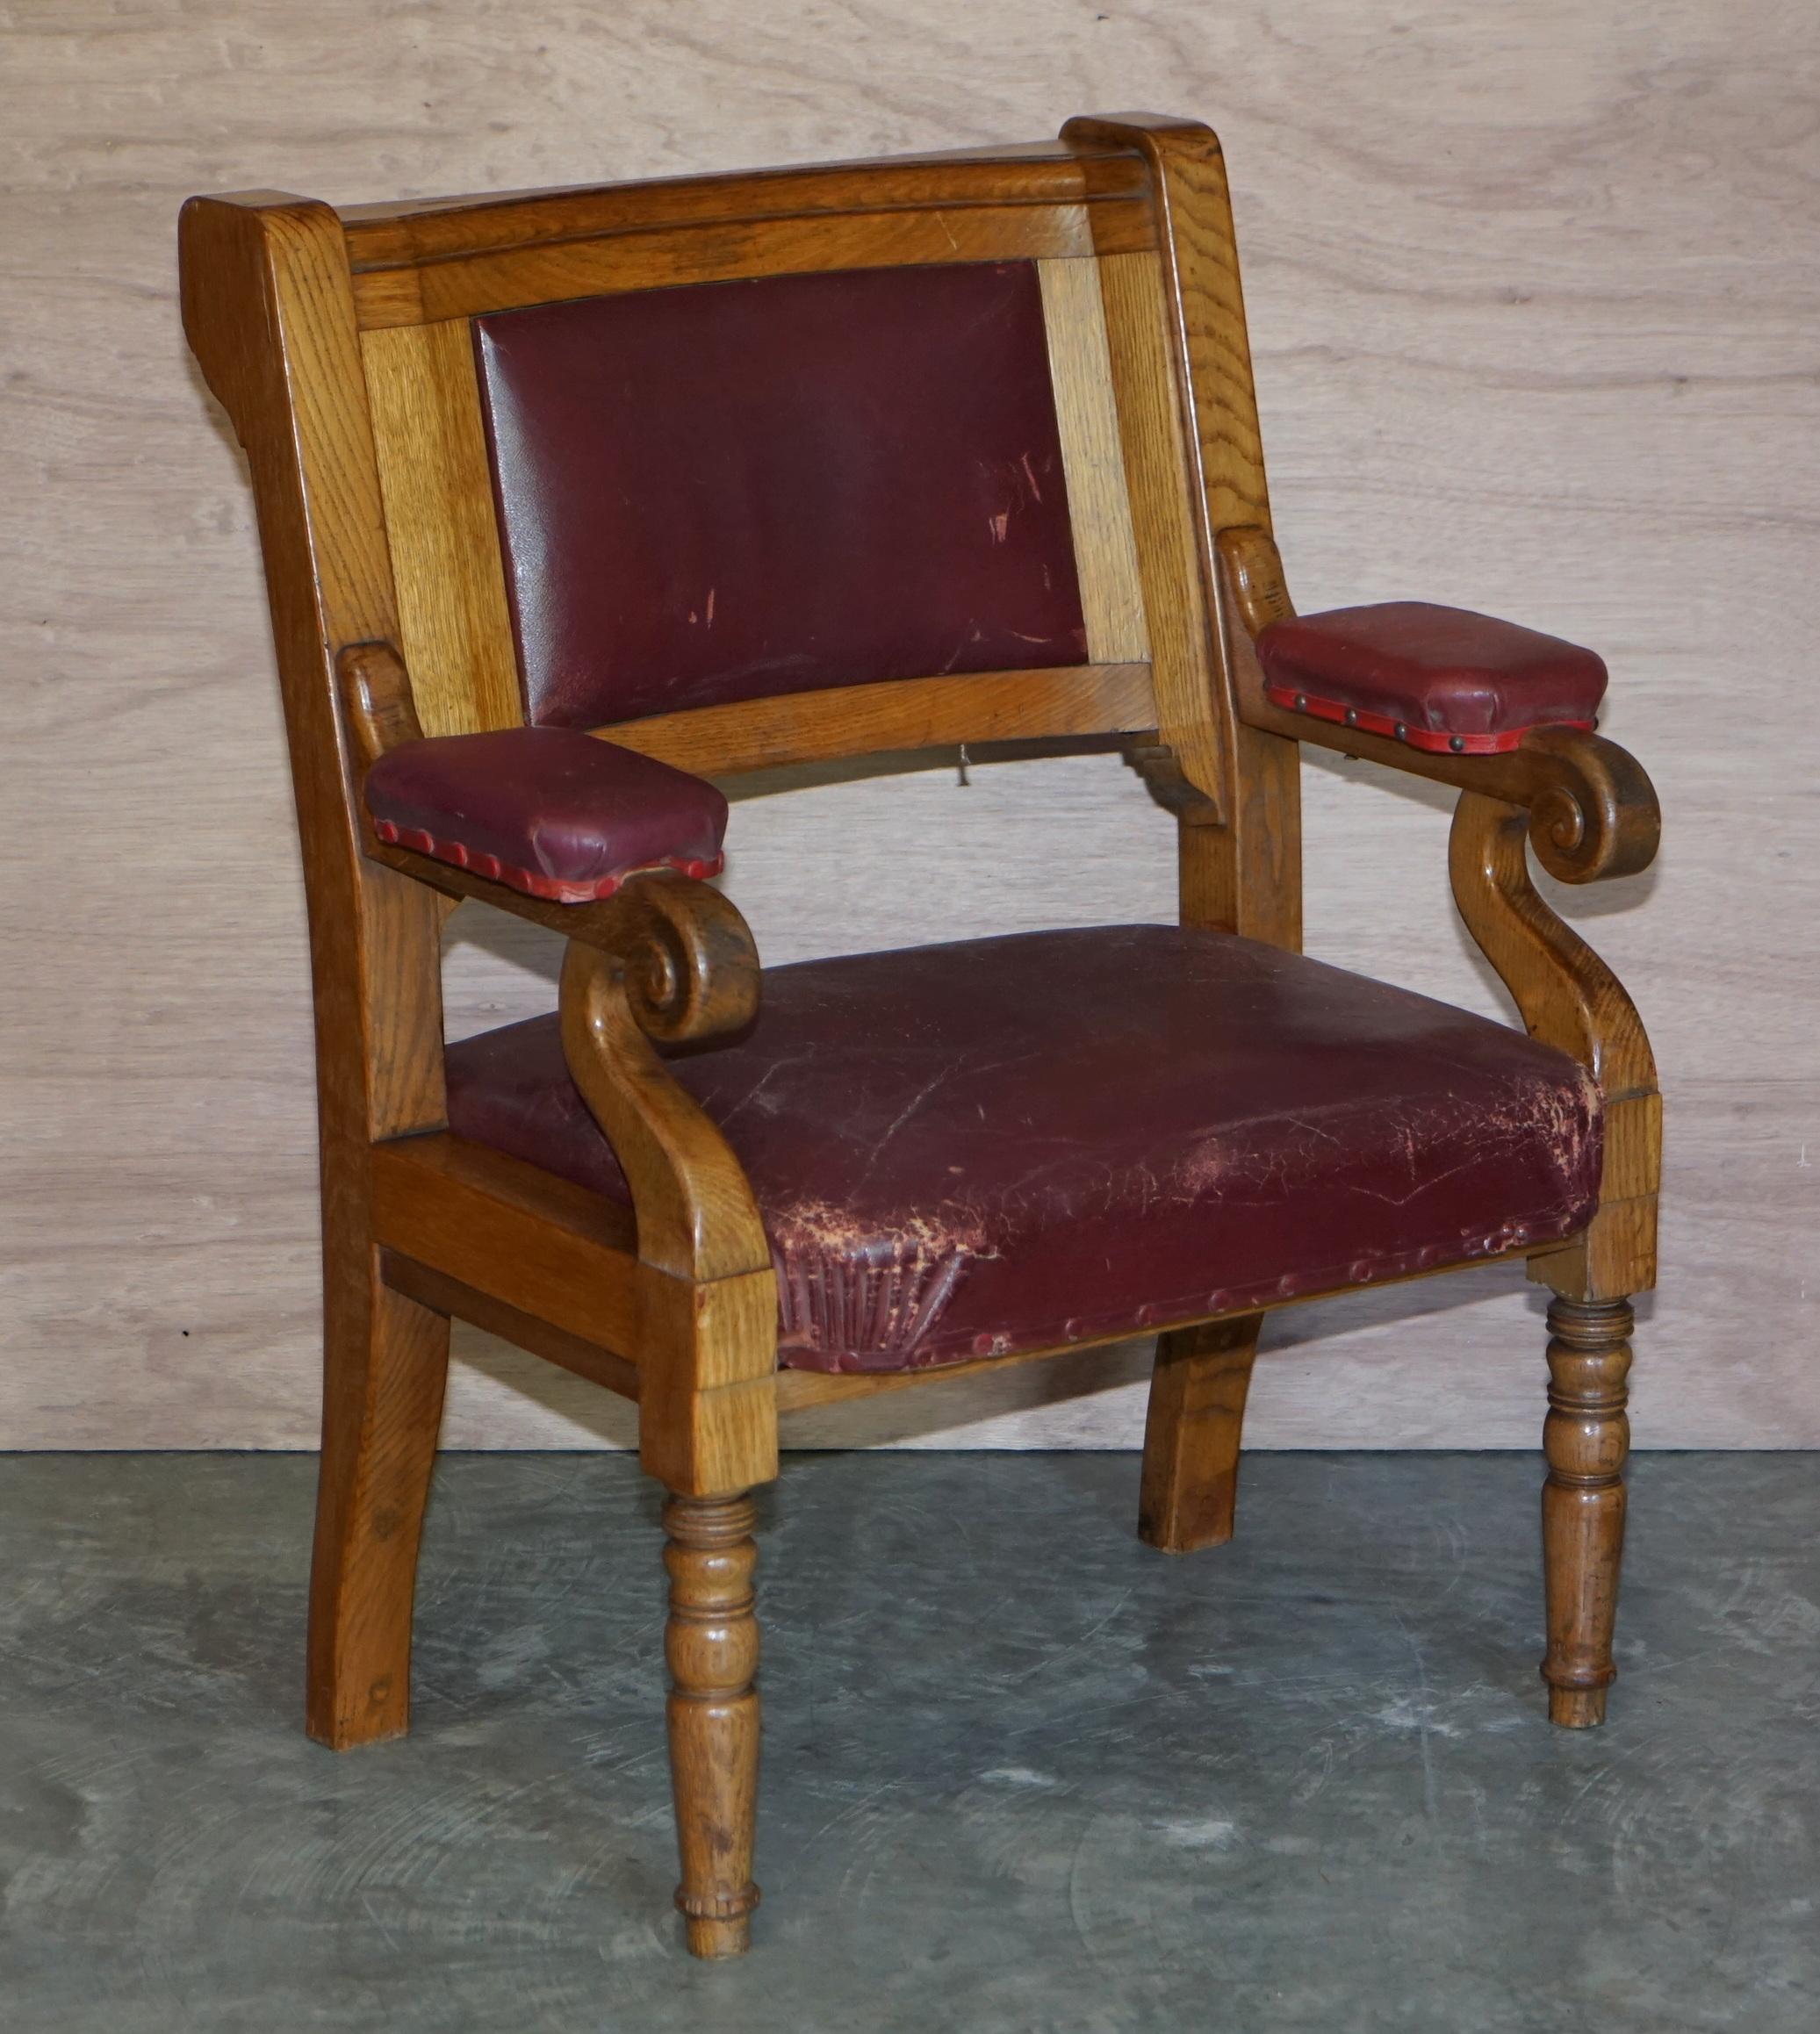 Nous sommes ravis d'offrir cette suite de six fauteuils d'origine Victorienne Freemason surdimensionnés, tapissés de cuir brun vieilli et encadrés de chêne doré

Ces chaises ont un aspect très impressionnant et important. Ils sont fabriqués avec